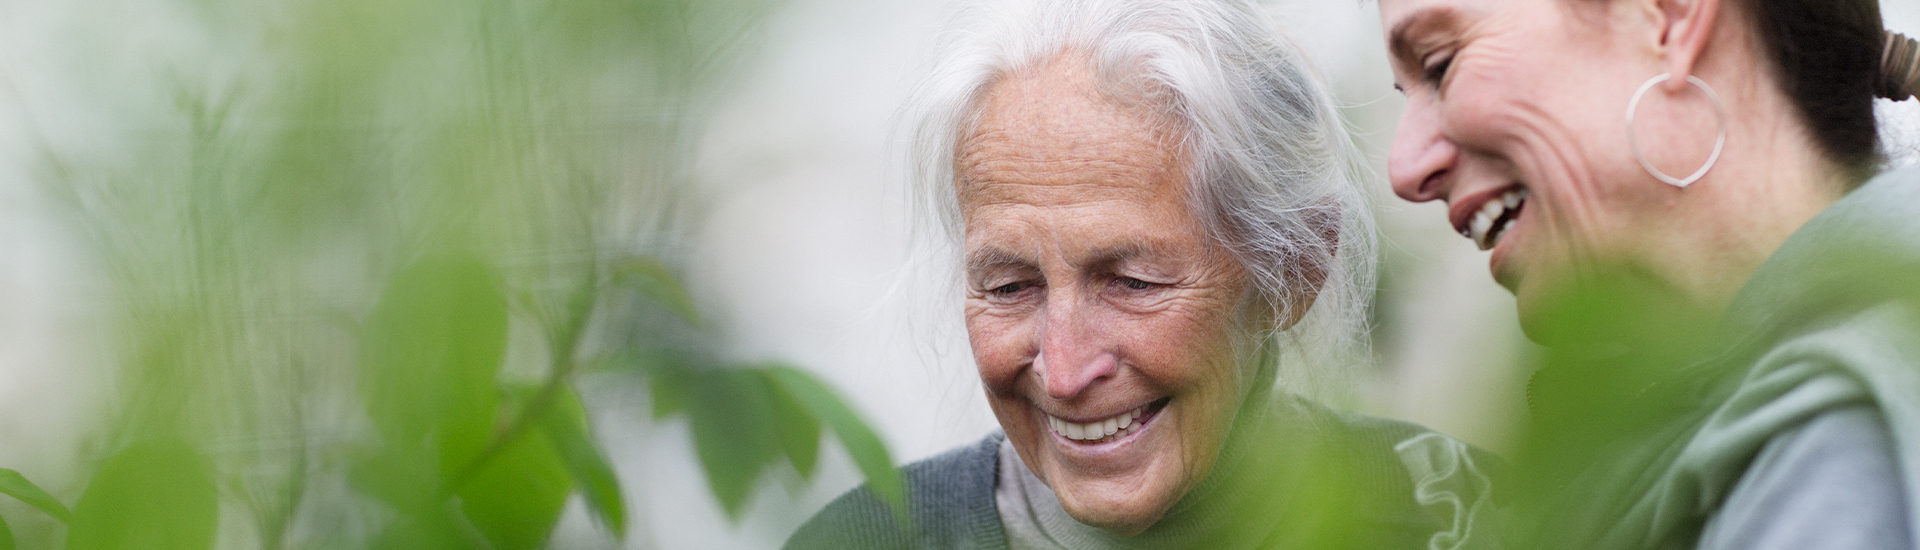 Ältere Person und junge Frau lachen mit Pflanzen im Vordergrund